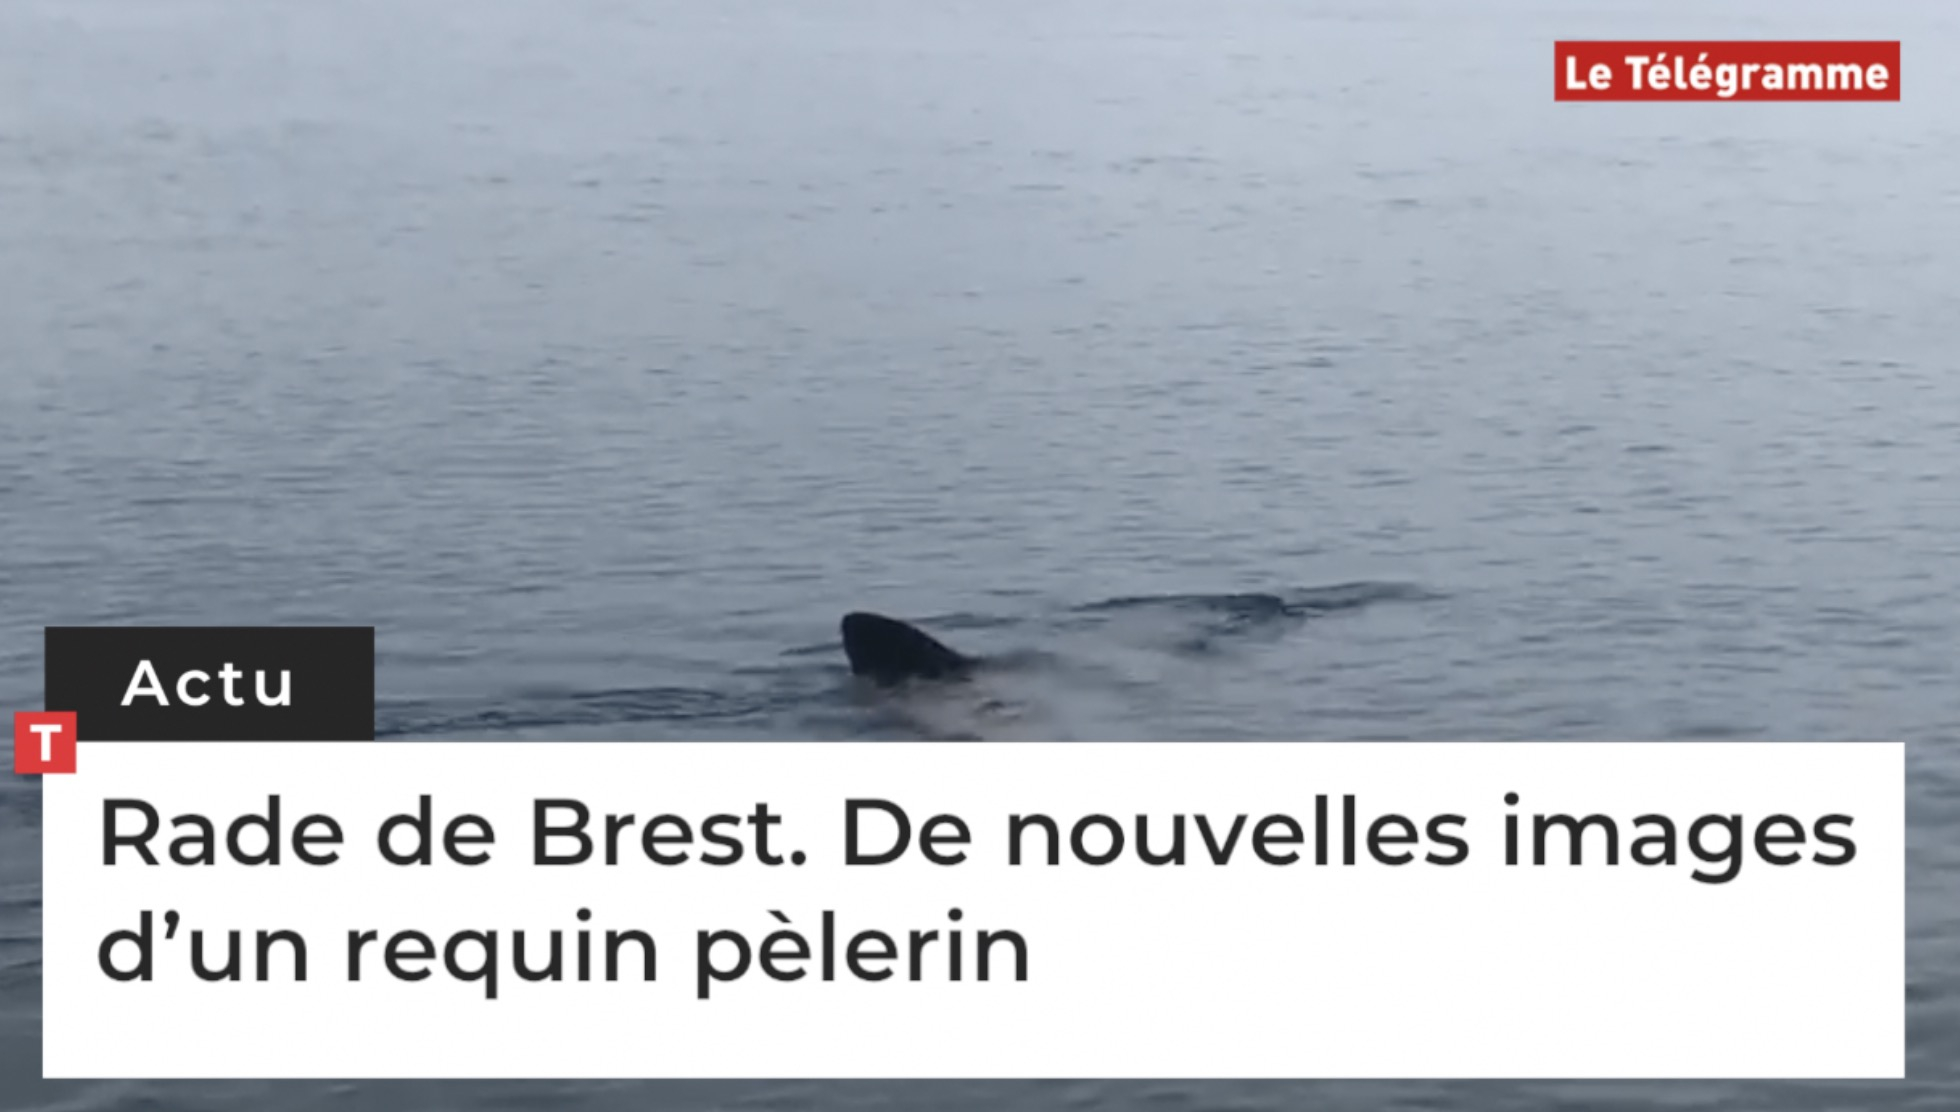 Rade de Brest. De nouvelles images d’un requin pèlerin  (Le Télégramme)